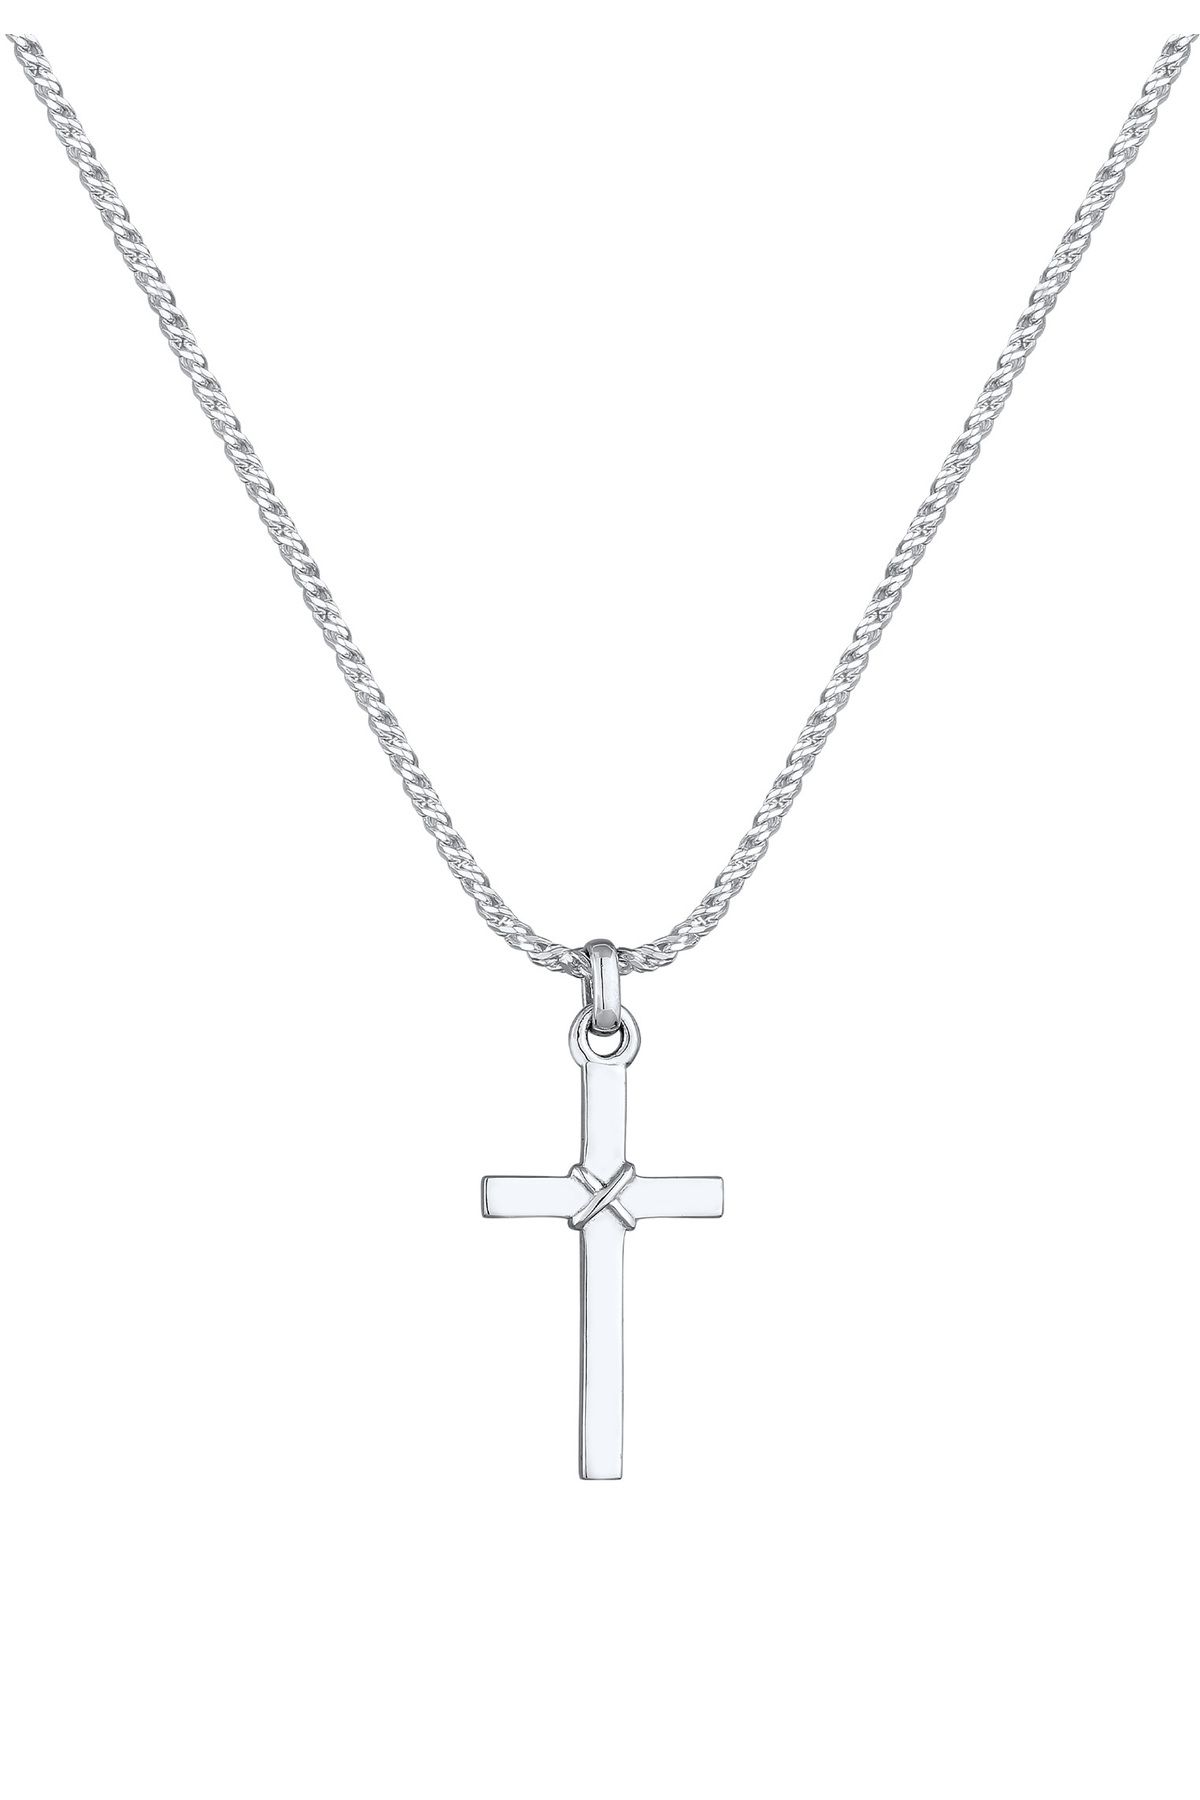 KUZZOI Halskette Herren Kreuz Flach Kordelkette 925 Silber - Trendyol